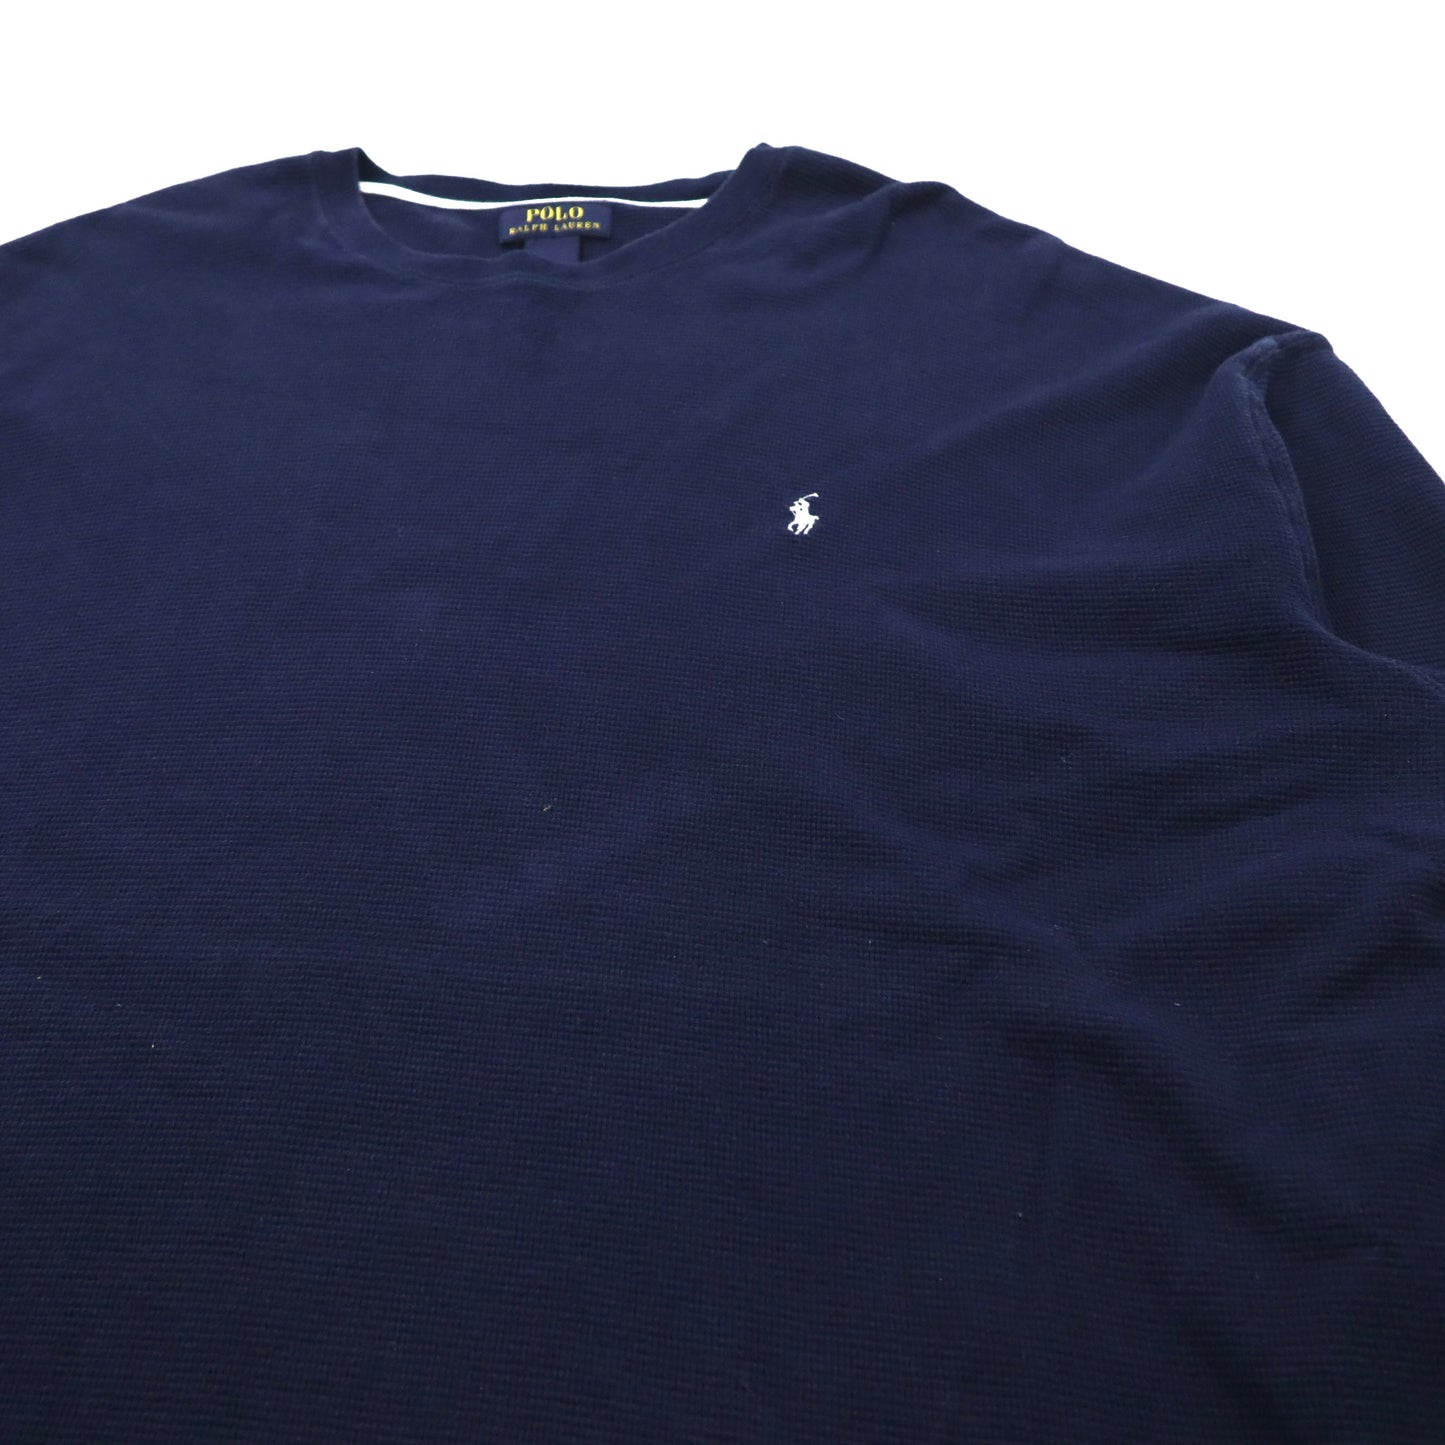 POLO RALPH LAUREN ビッグサイズ サーマル ロングスリーブTシャツ 4XL ネイビー コットン スモールポニー刺繍